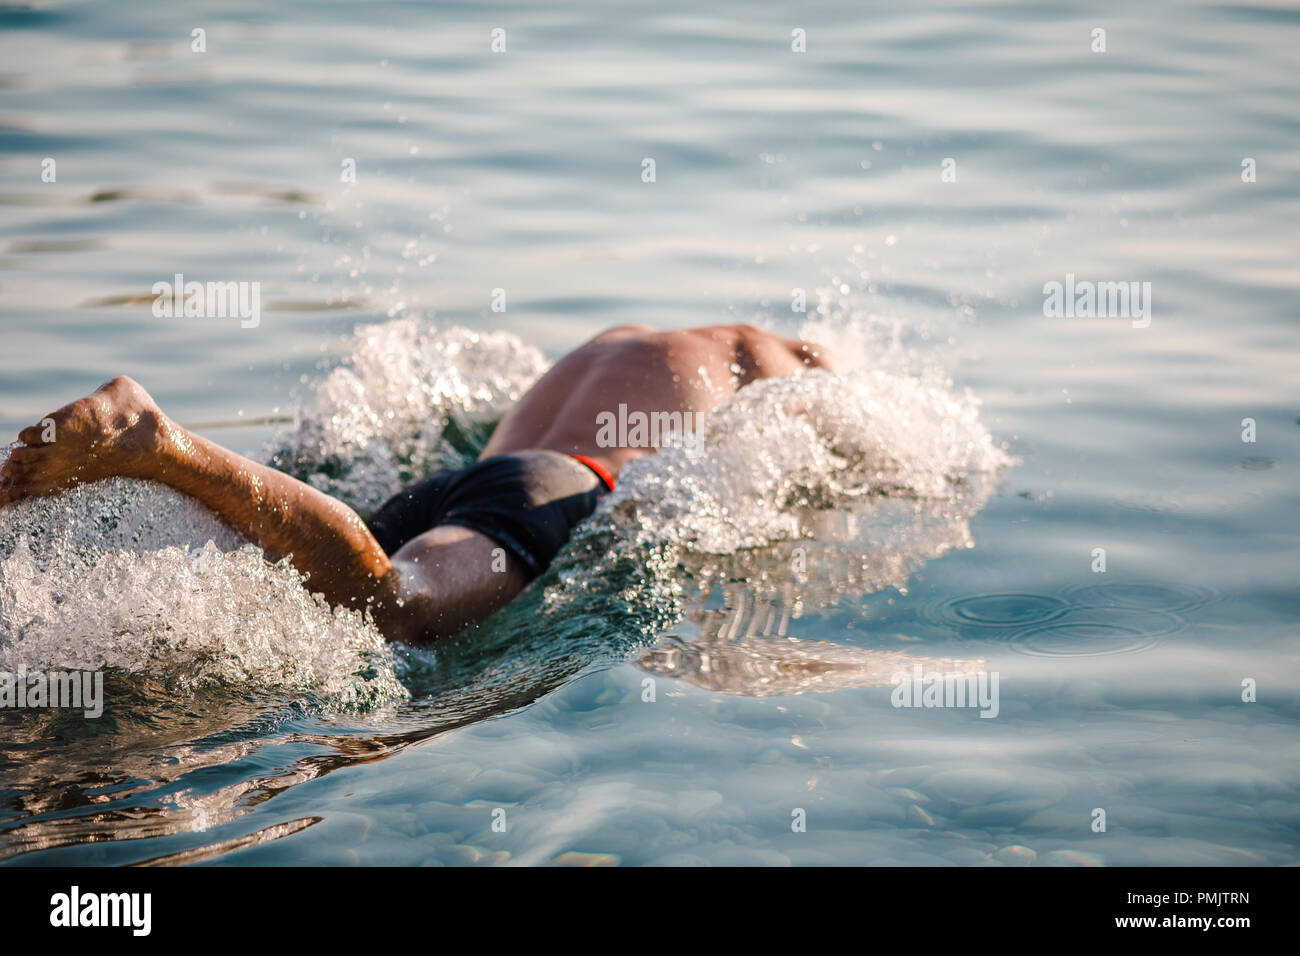 Uomo nuoto immagini e fotografie stock ad alta risoluzione - Alamy